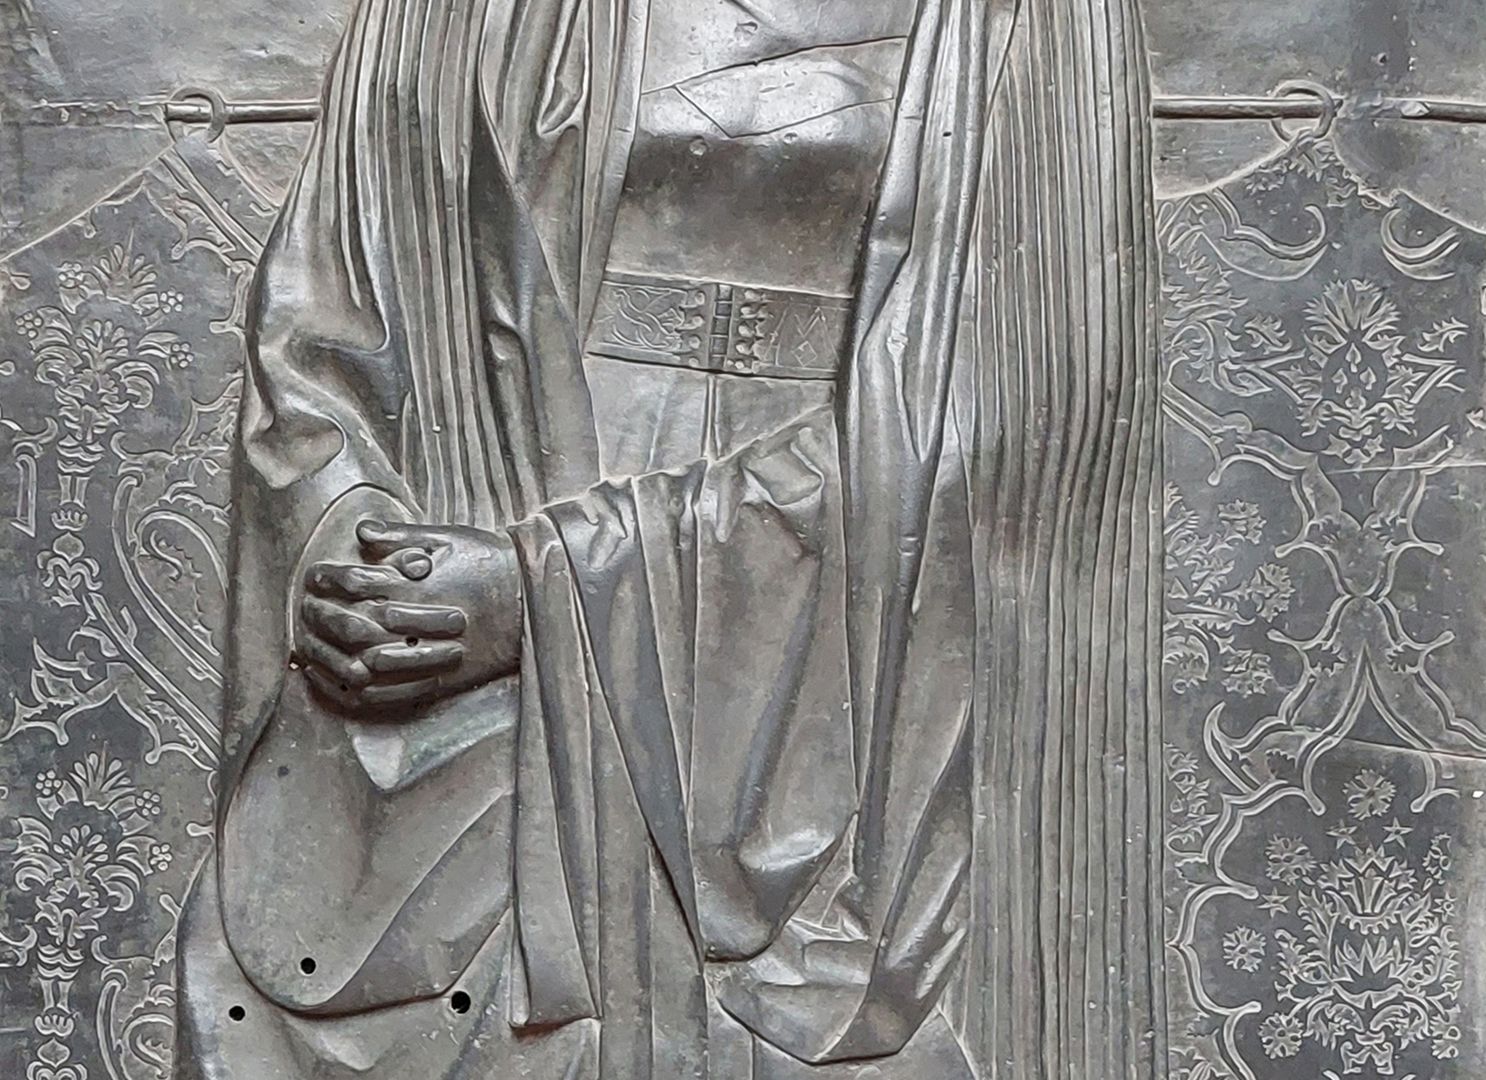 Grabplatte der Herzogin Sophia von Mecklenburg, Prinzessin von Pommern Detailansicht mit Faltenwurf des Gewandes und zum Gebet gefalteten Händen (in den Montagelöchern war vermutlich ein Rosenkranz befestigt)